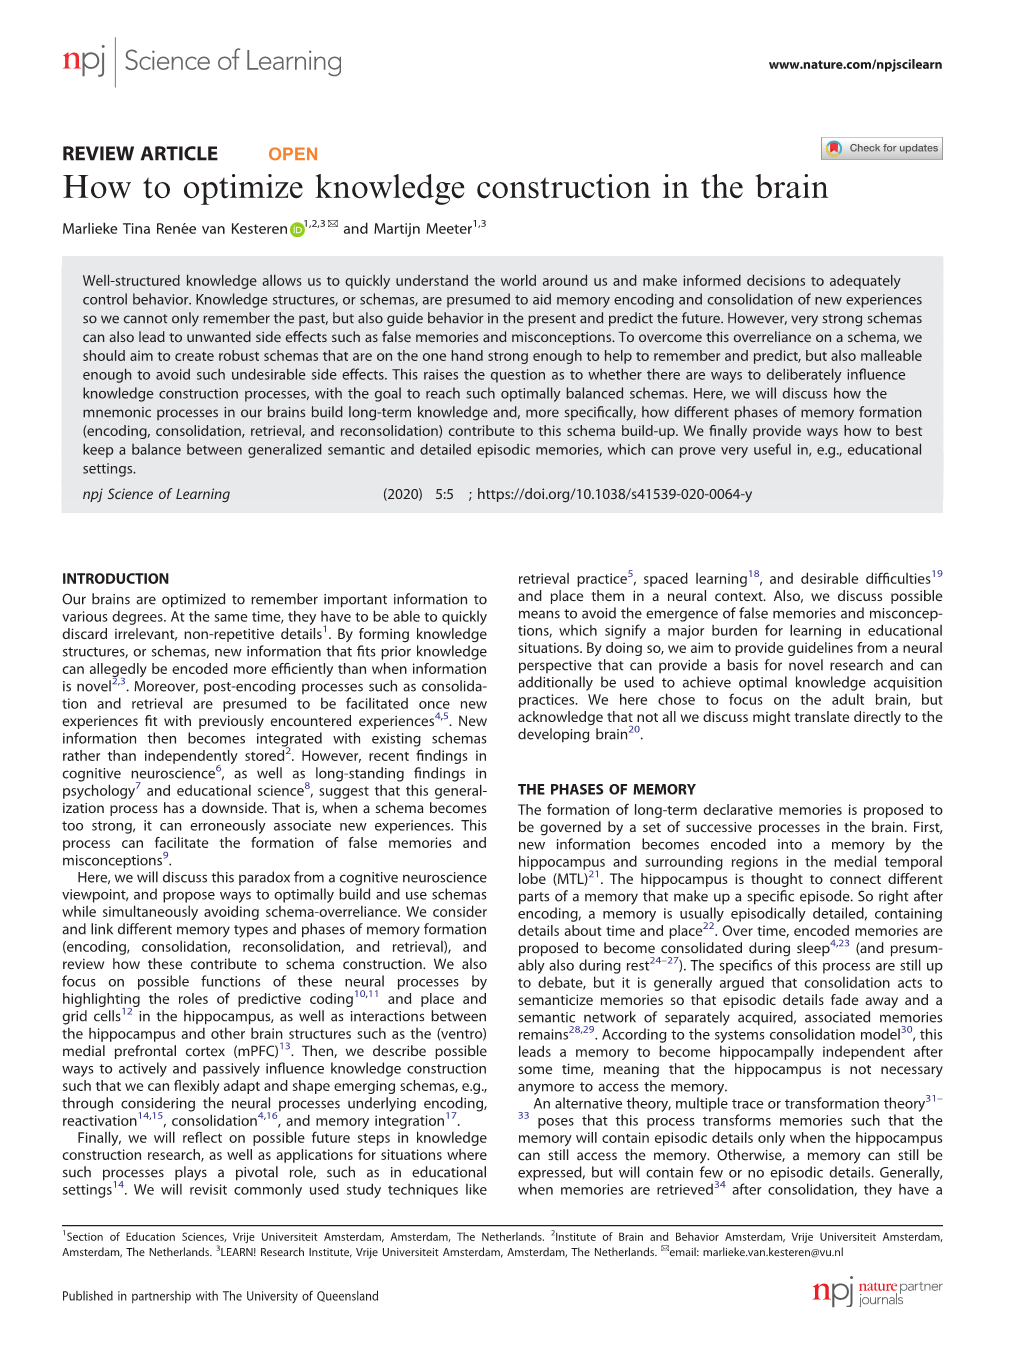 How to Optimize Knowledge Construction in the Brain ✉ Marlieke Tina Renée Van Kesteren 1,2,3 and Martijn Meeter1,3